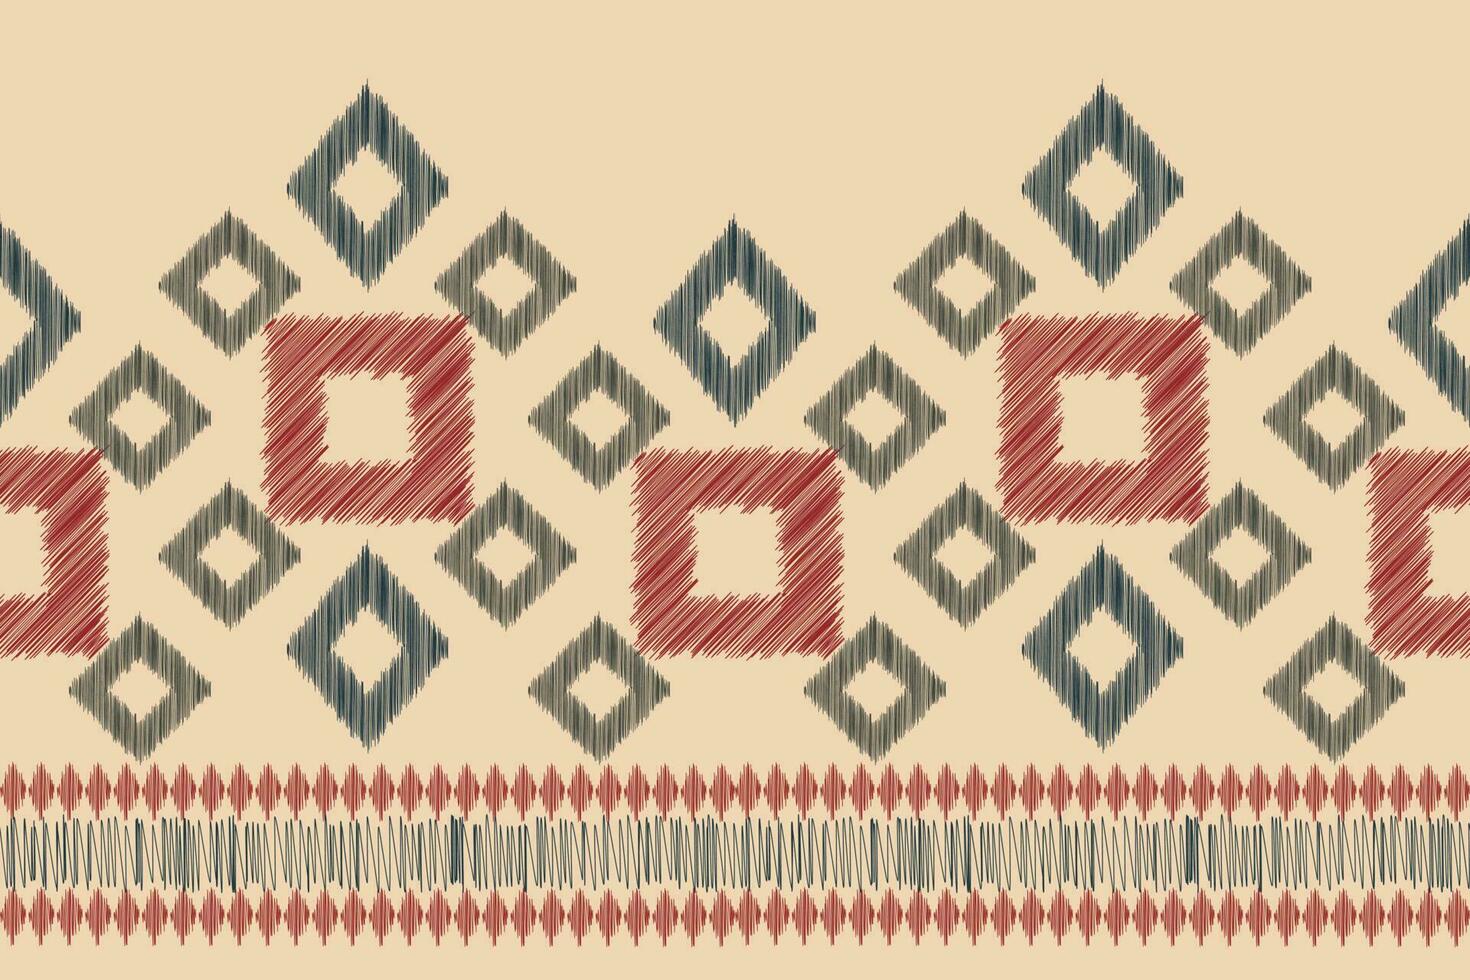 étnico ikat tela modelo geométrico estilo.africano ikat bordado étnico oriental modelo marrón crema antecedentes. resumen,vector,ilustración.para textura,ropa,scraf,decoración,alfombra,seda. vector